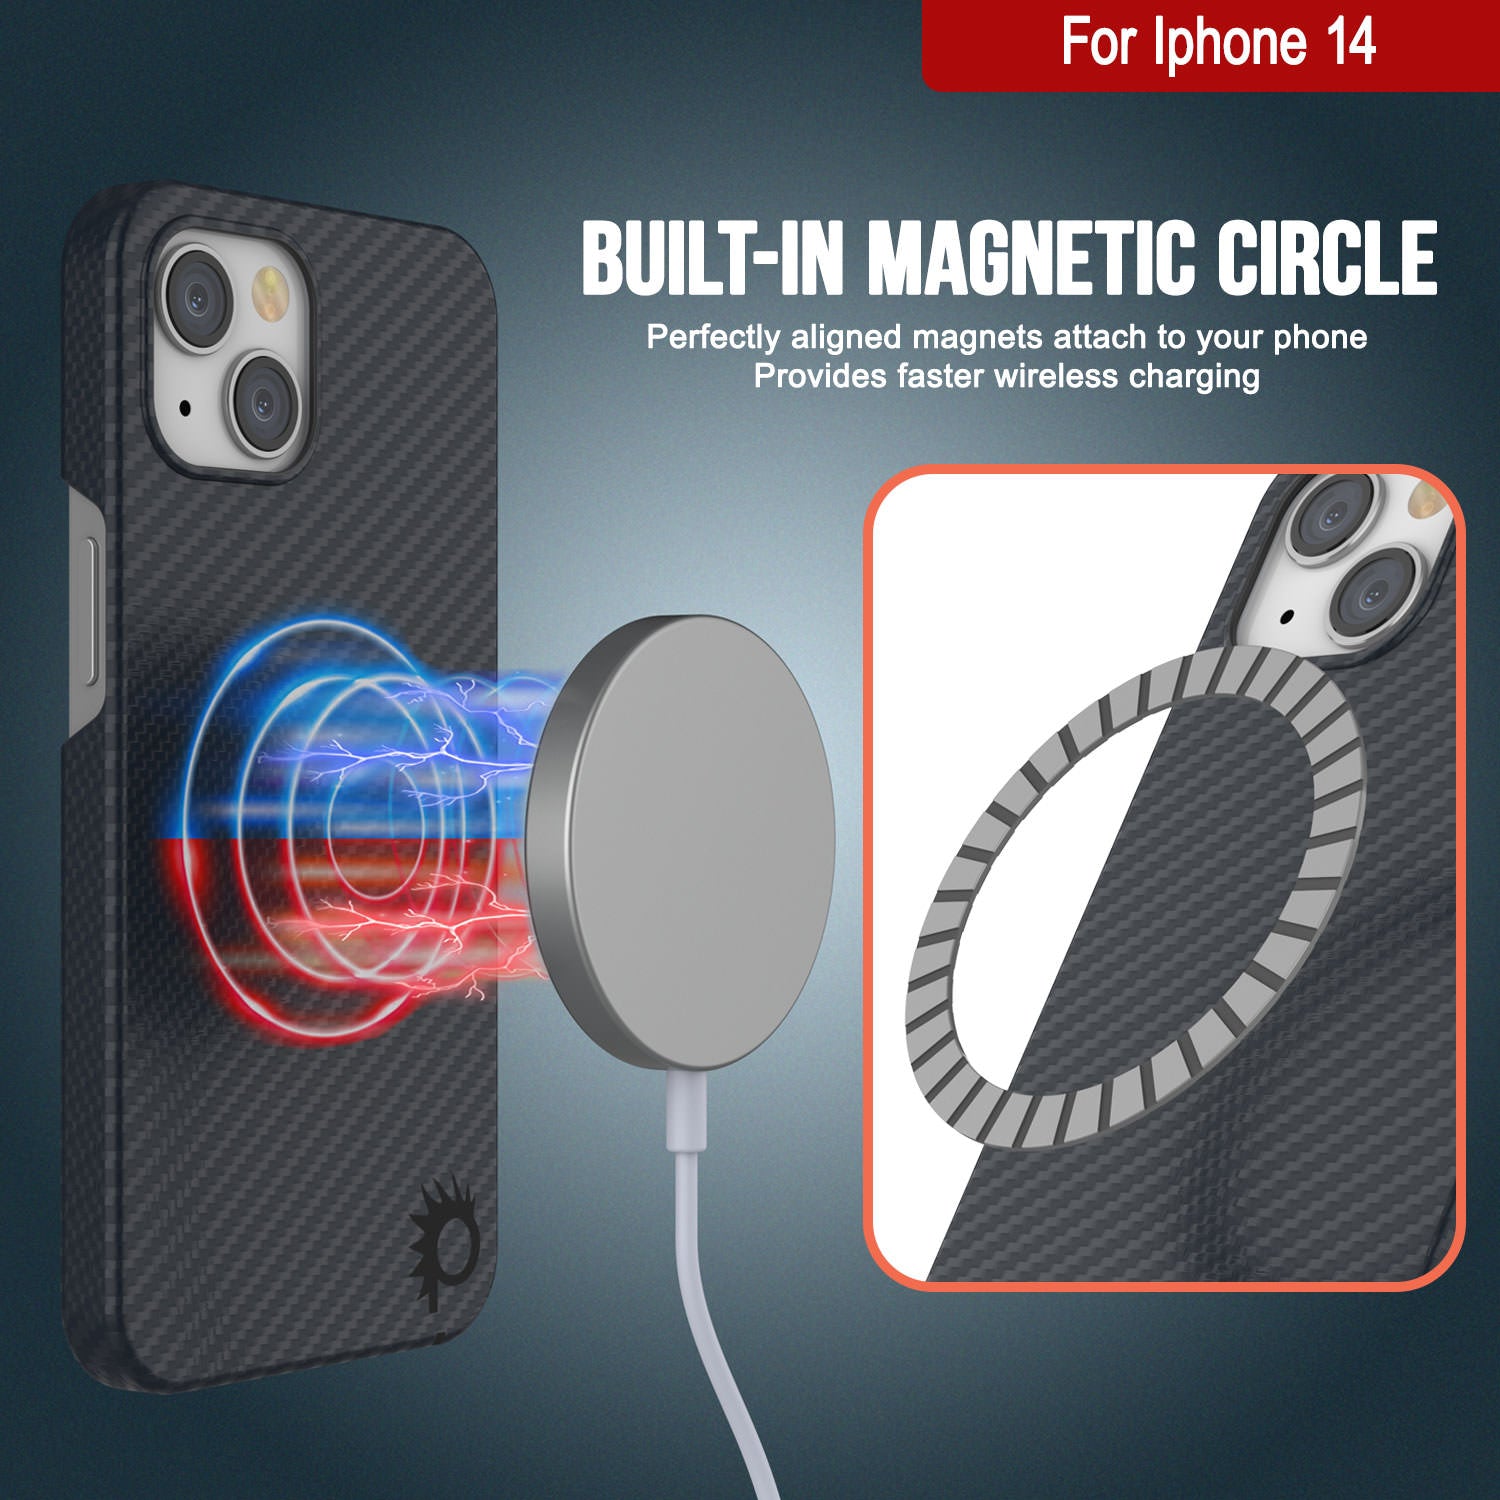 Carbon Fiber iPhone 14 Pro Max Case - Aramid